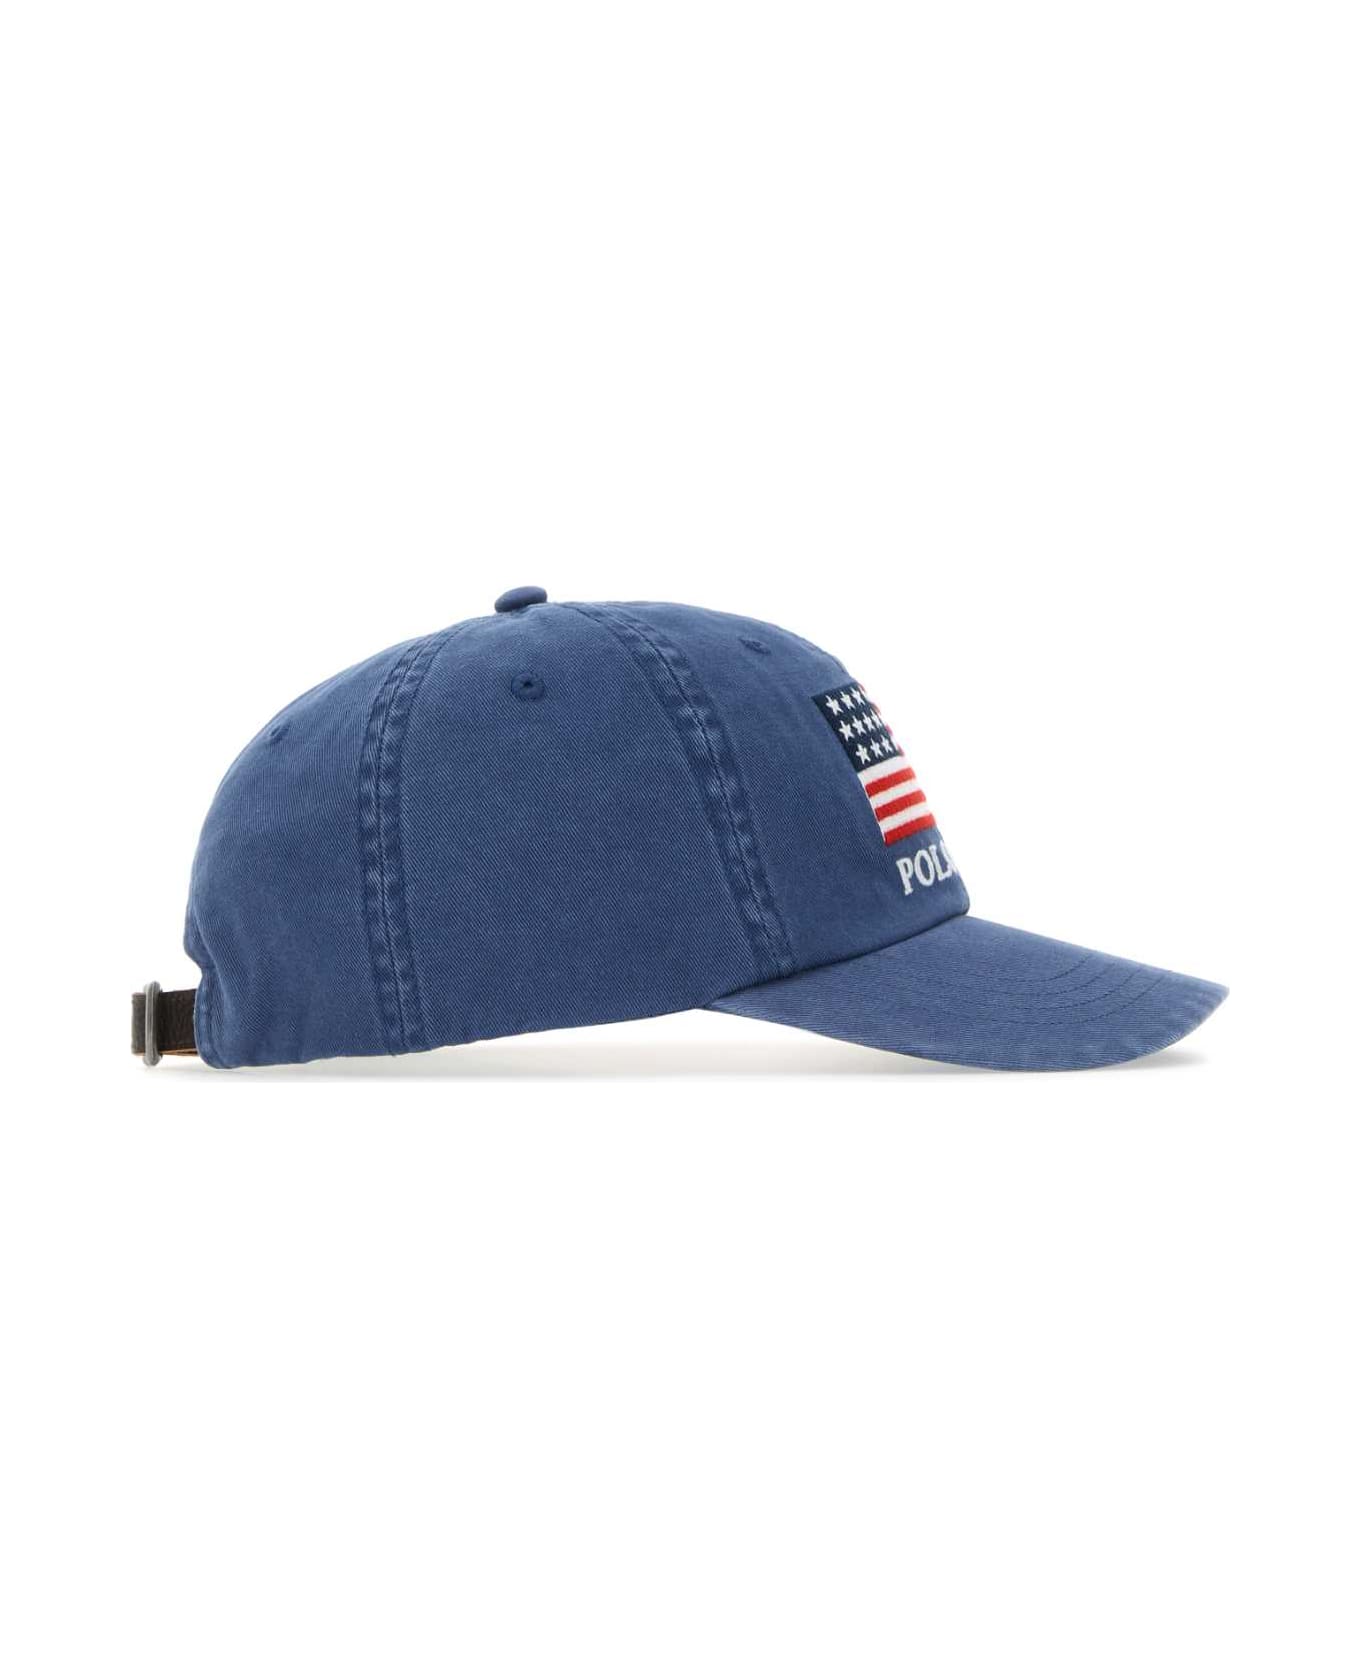 Polo Ralph Lauren Air Force Blue Cotton Baseball Cap - LIGHTNAVY